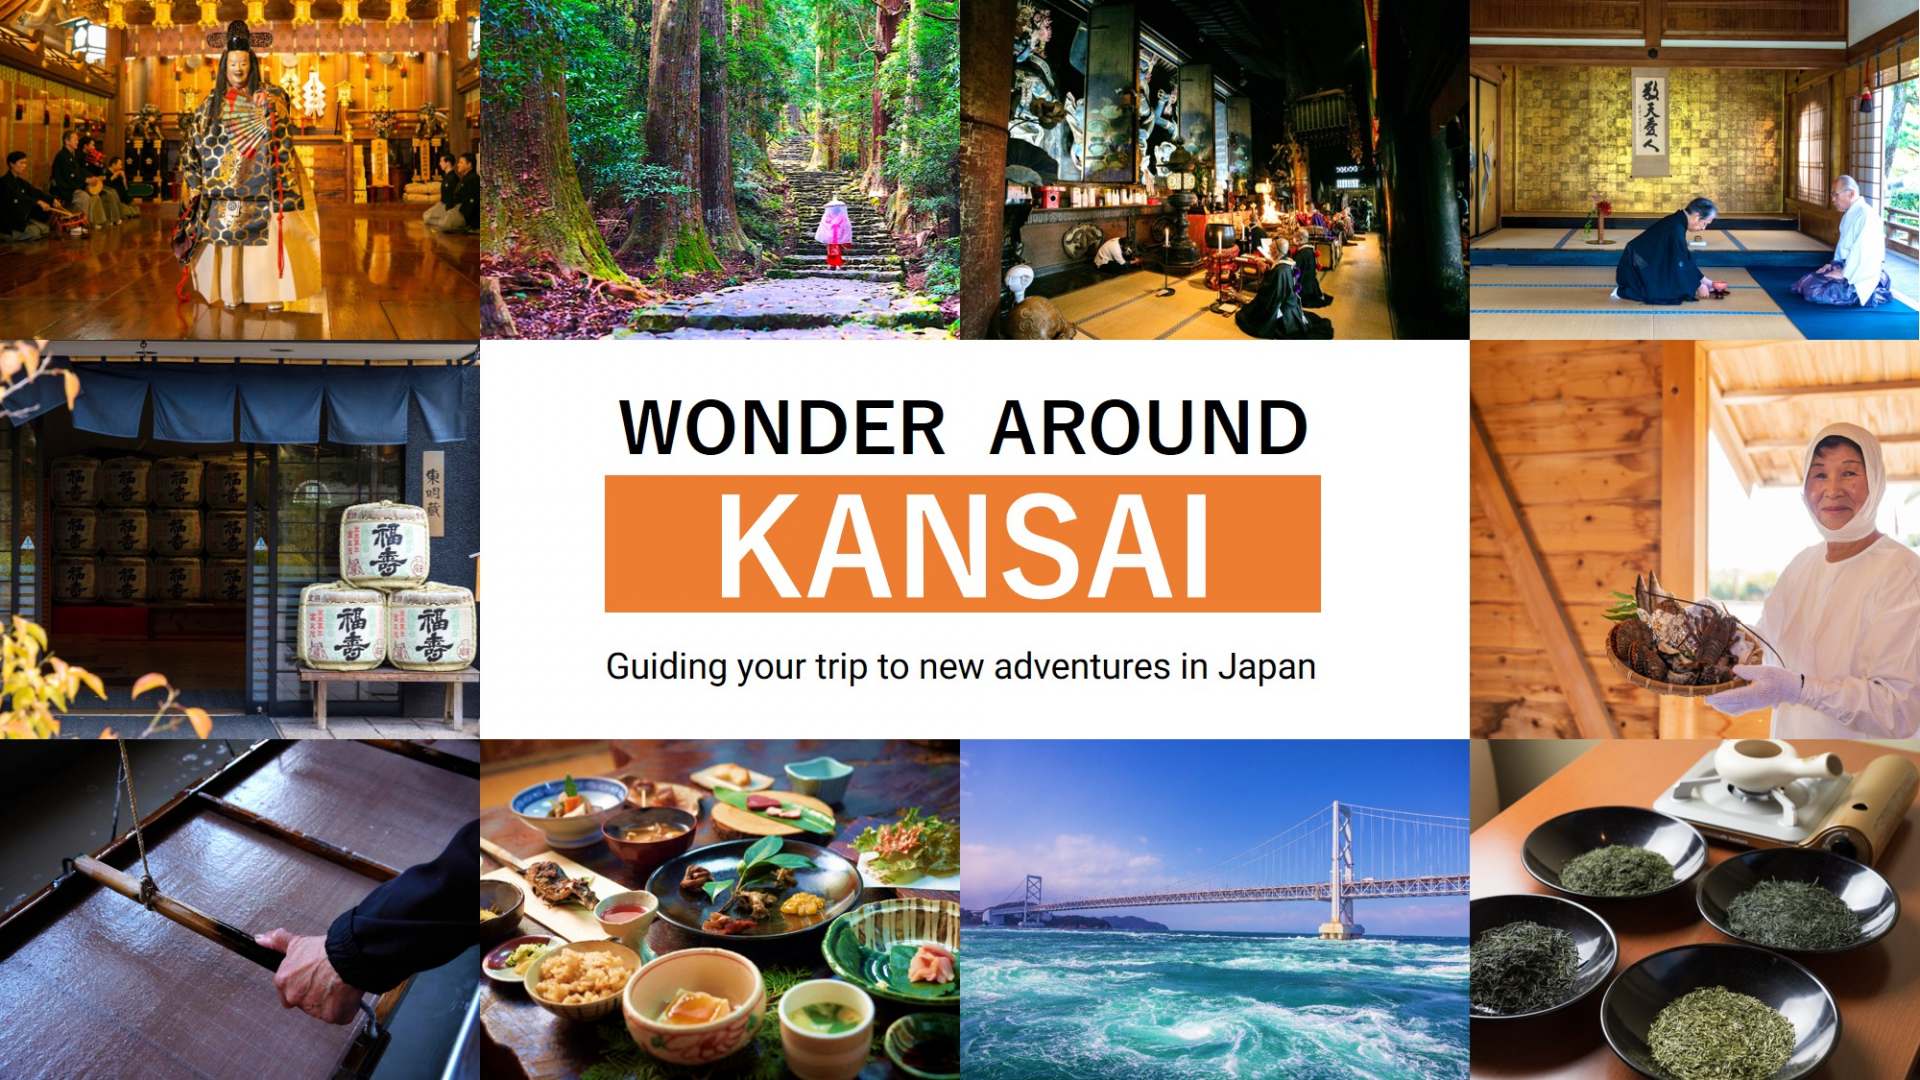 充滿關西特別行程建議的特別網站“WONDER AROUND KANSAI”現已上線